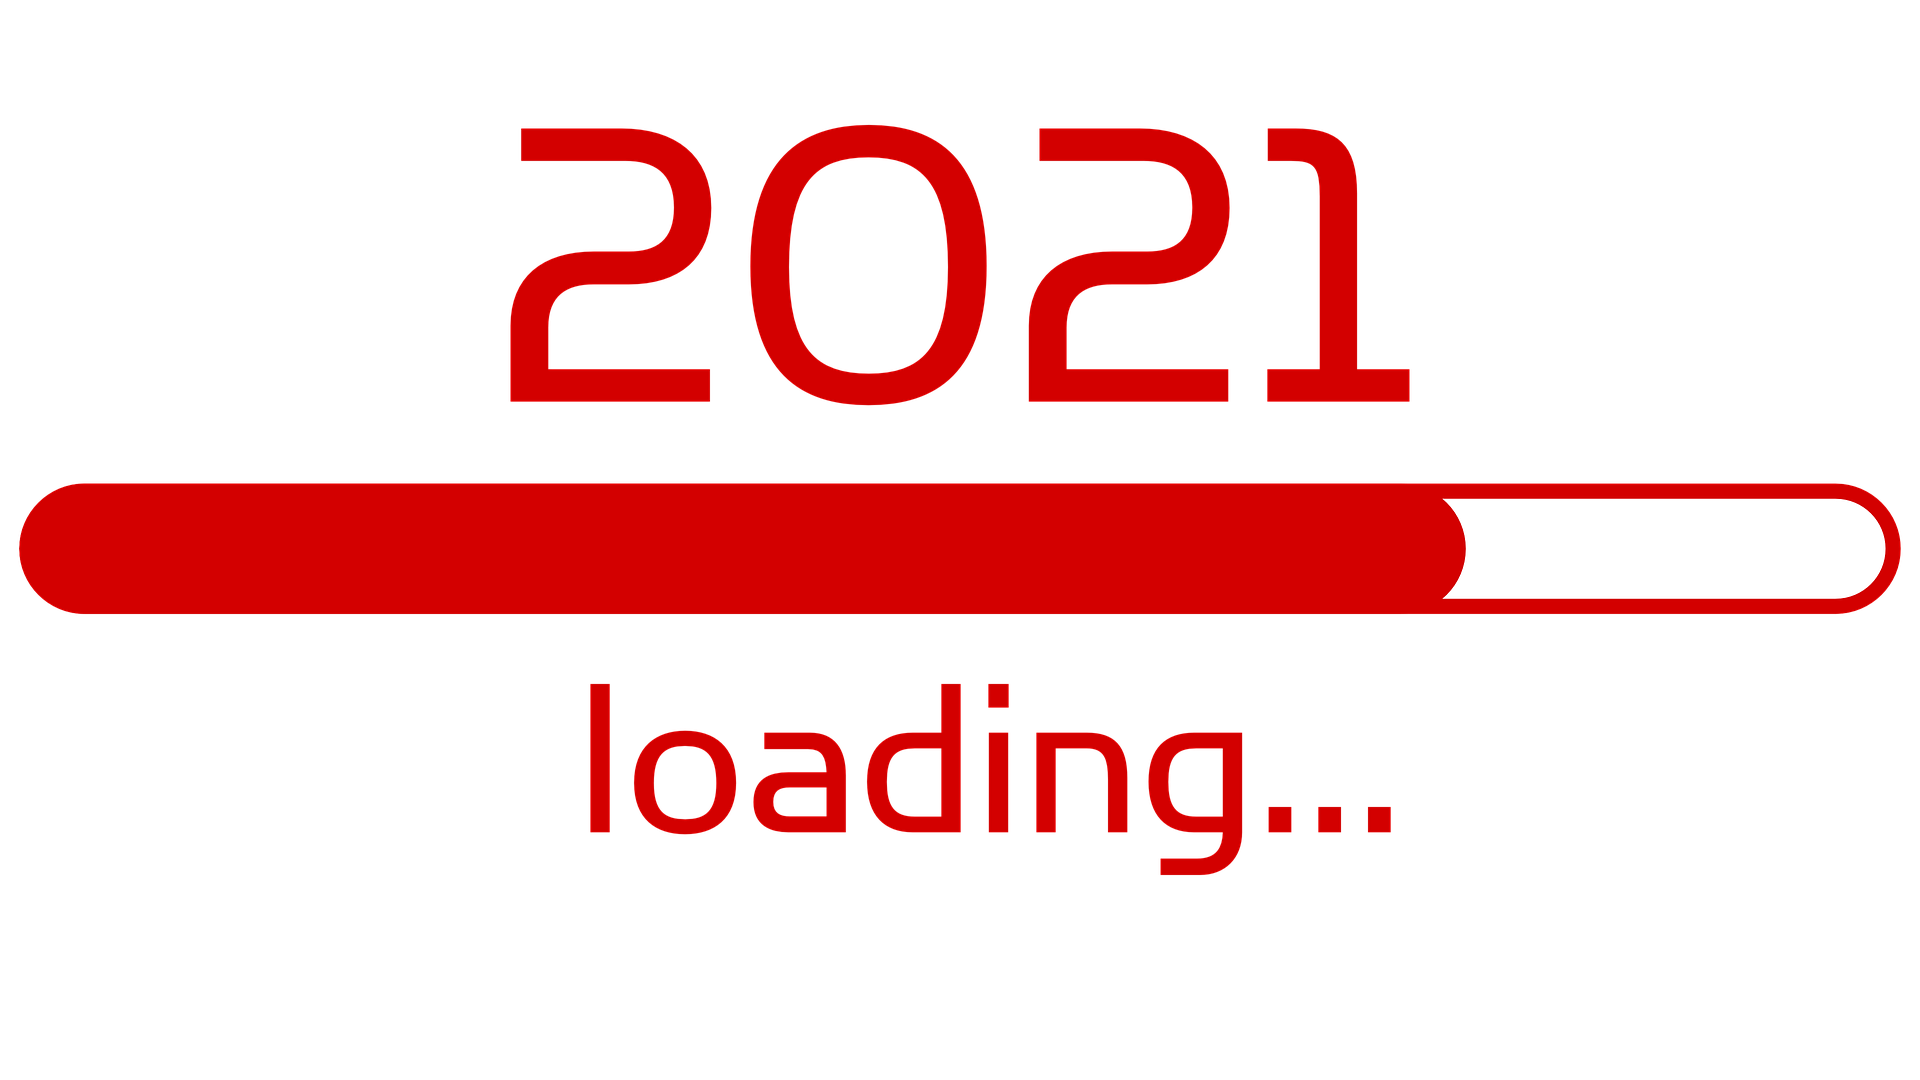 2021 wordt het jaar van ransomware 2.0 - Emerce